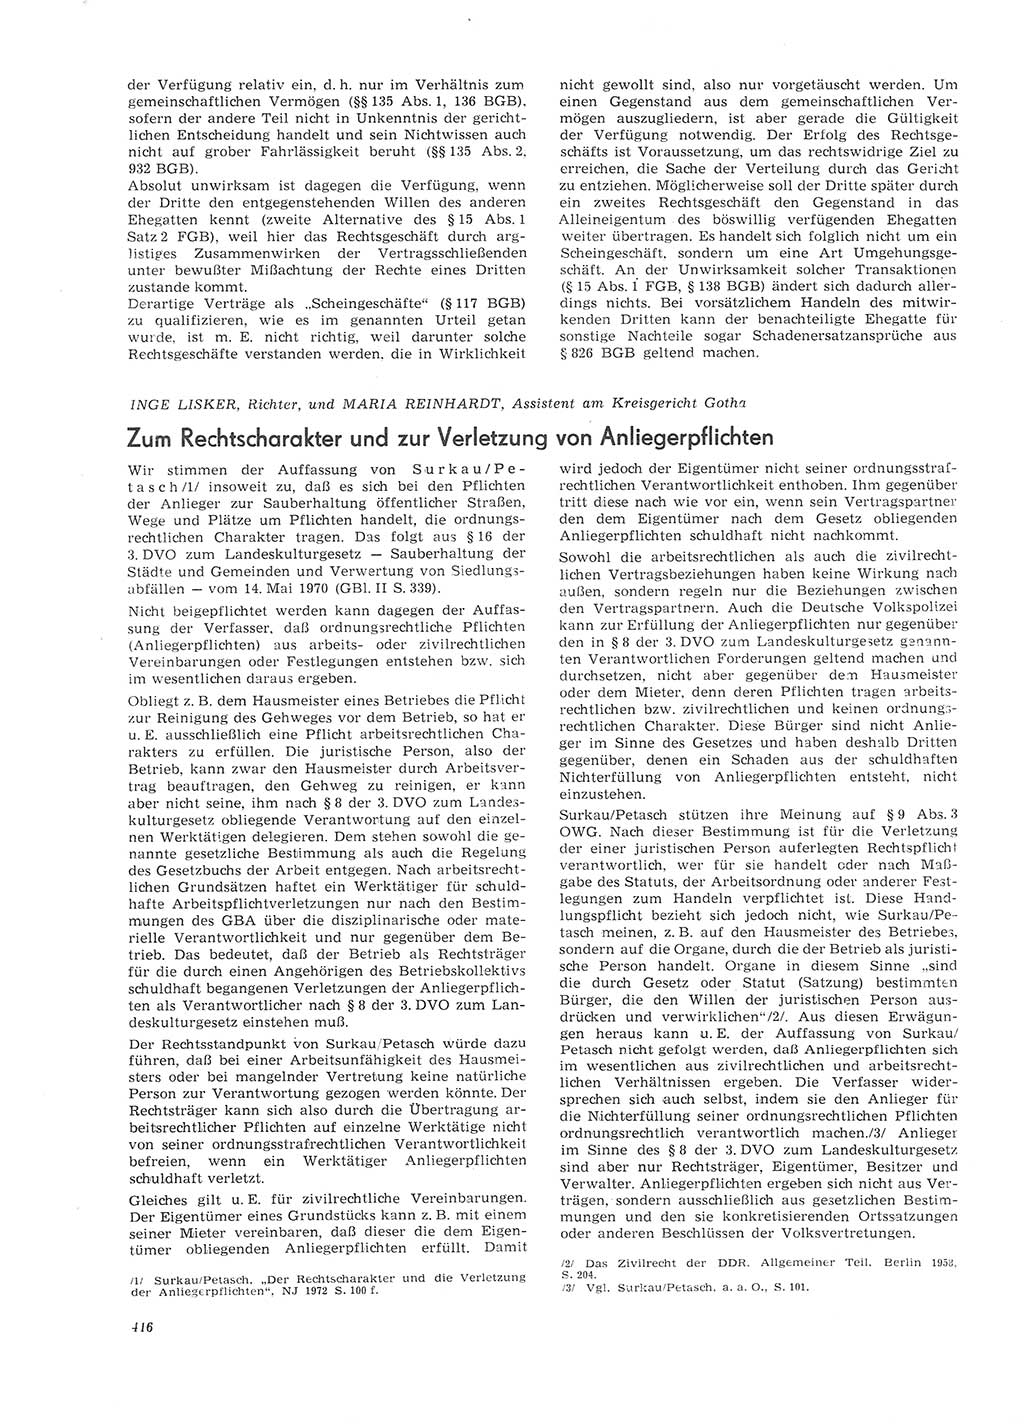 Neue Justiz (NJ), Zeitschrift für Recht und Rechtswissenschaft [Deutsche Demokratische Republik (DDR)], 26. Jahrgang 1972, Seite 416 (NJ DDR 1972, S. 416)